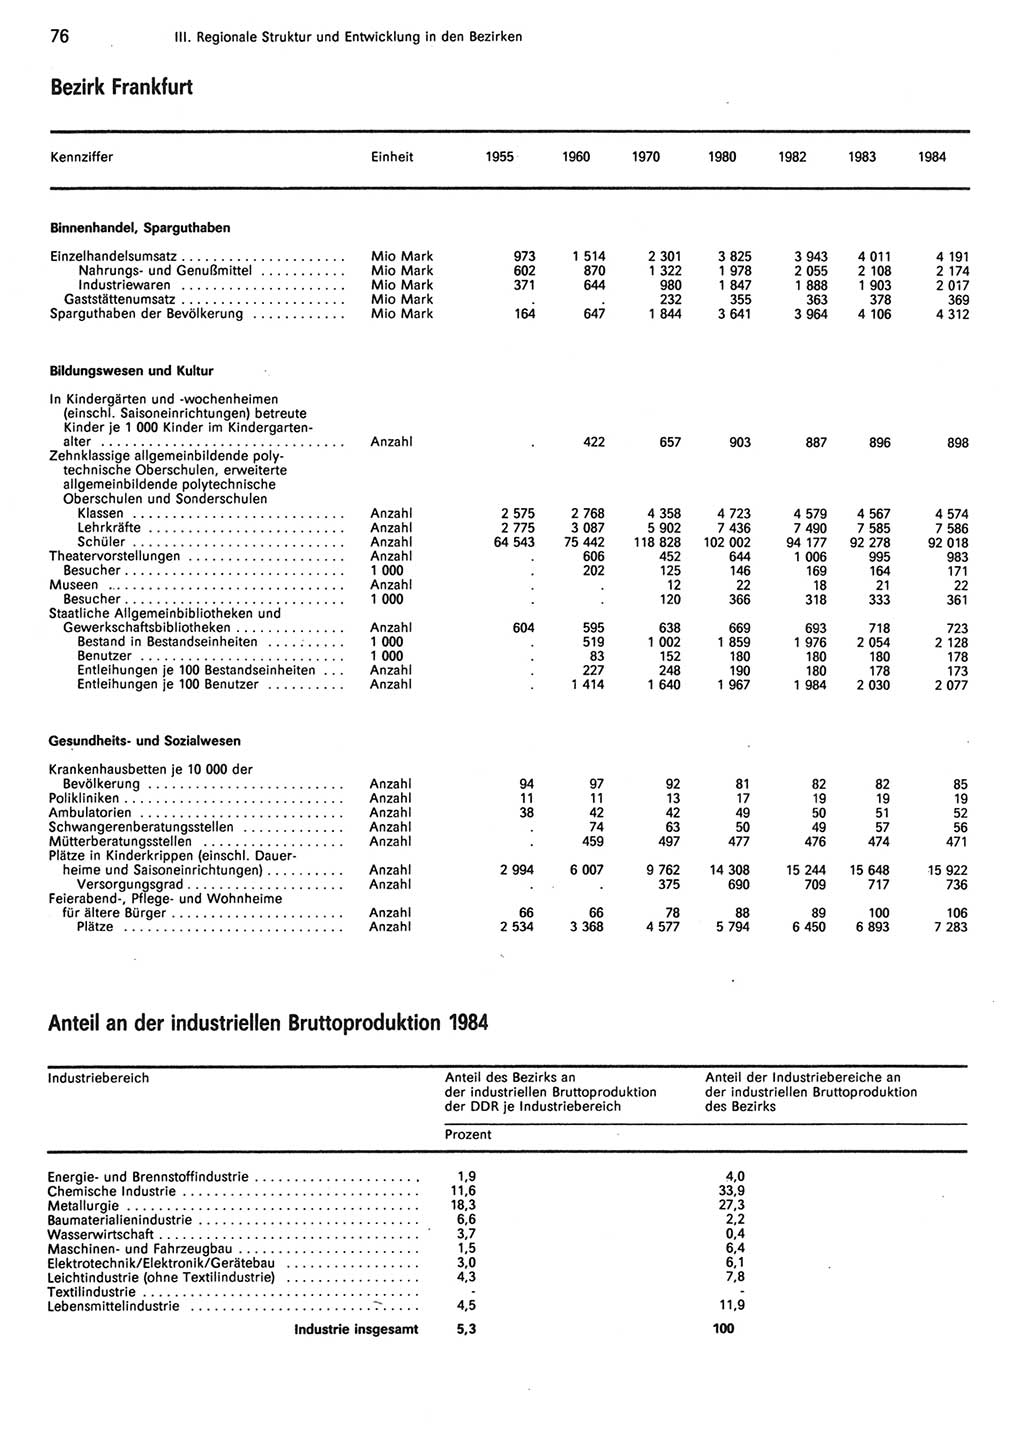 Statistisches Jahrbuch der Deutschen Demokratischen Republik (DDR) 1985, Seite 76 (Stat. Jb. DDR 1985, S. 76)